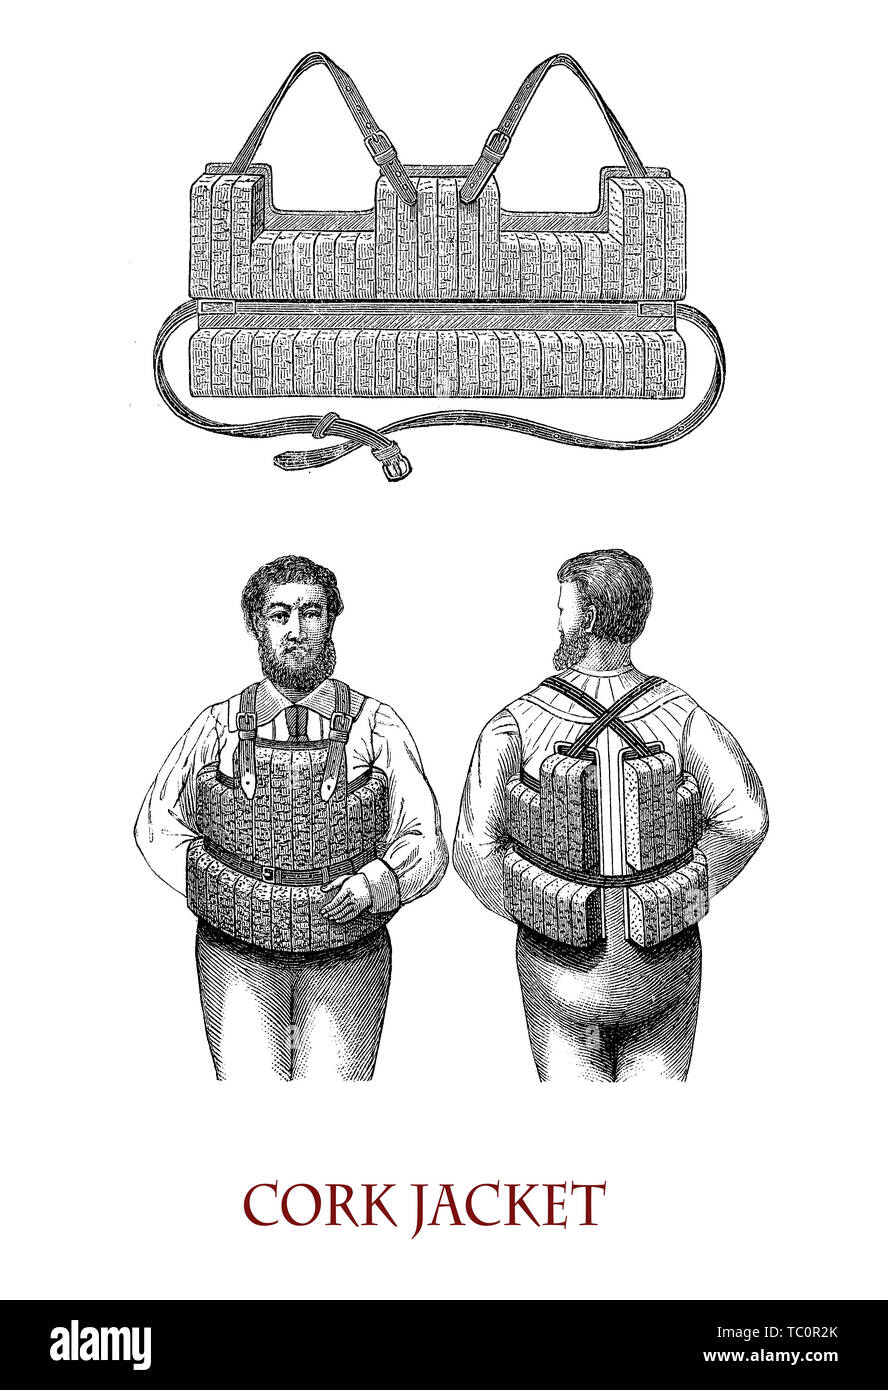 Vintage illustration décrivant une veste de Cork et façon de les porter pour un sauvetage en toute sécurité Banque D'Images